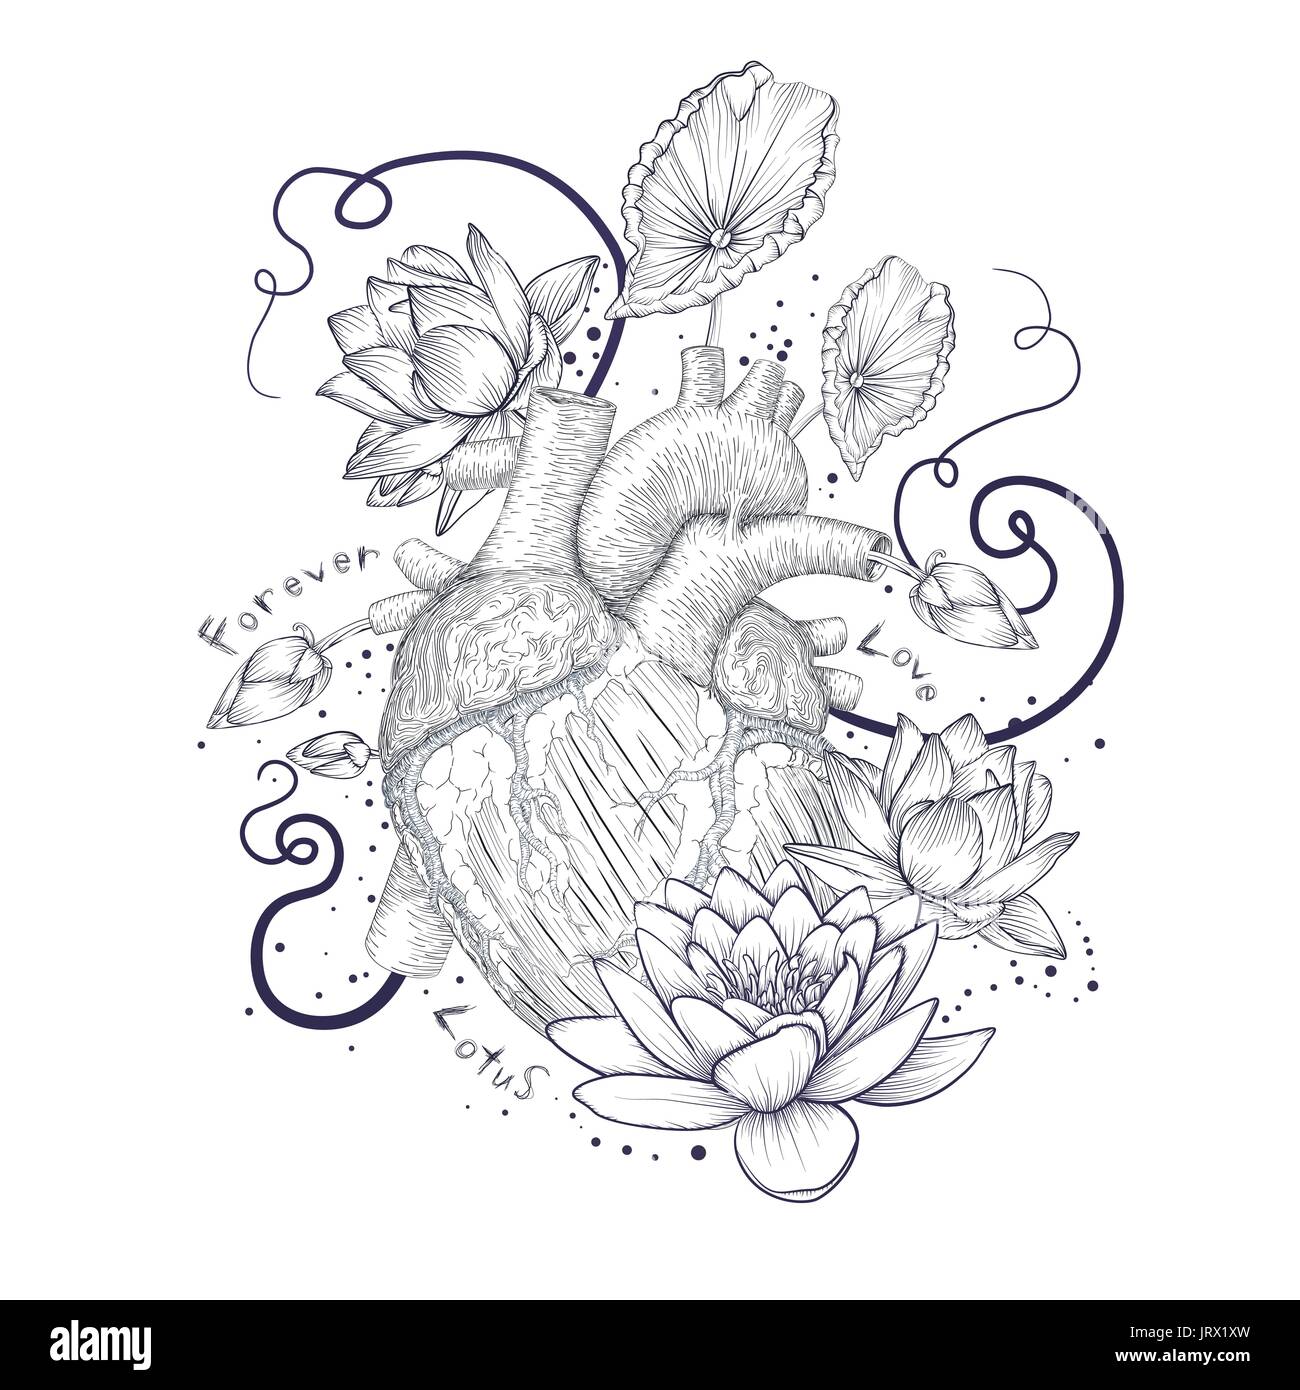 Broken Heart Tattoo Stock Illustrations – 515 Broken Heart Tattoo Stock  Illustrations, Vectors & Clipart - Dreamstime